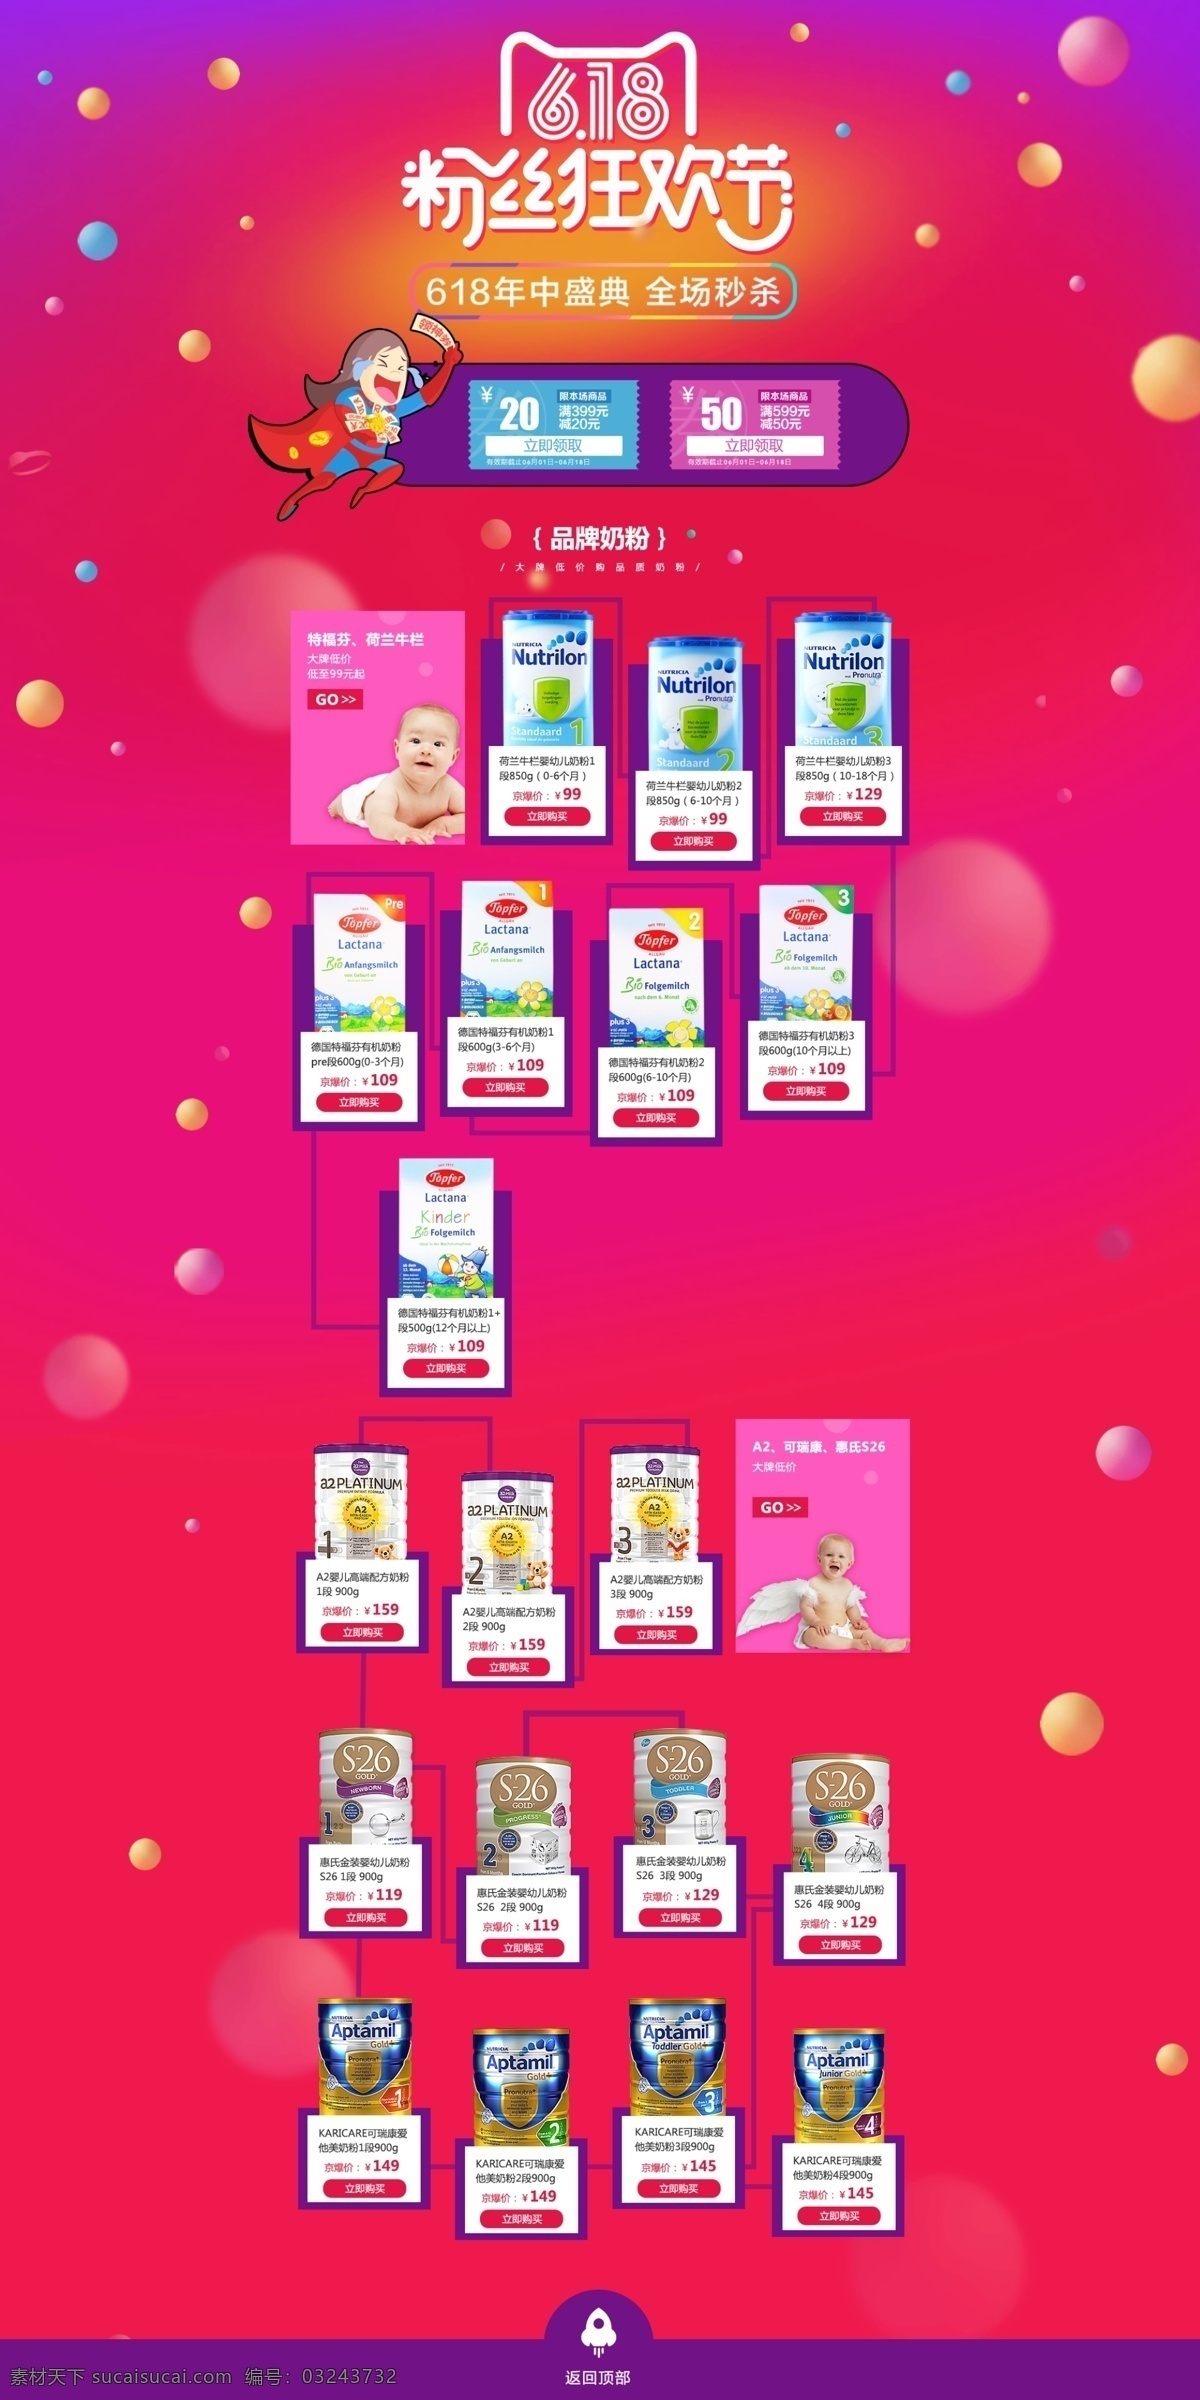 京东 店 618 母婴 奶粉 用品 pc 端 完 整版 年中大促 节日活动 母婴用品 奶粉用品 牛栏奶粉